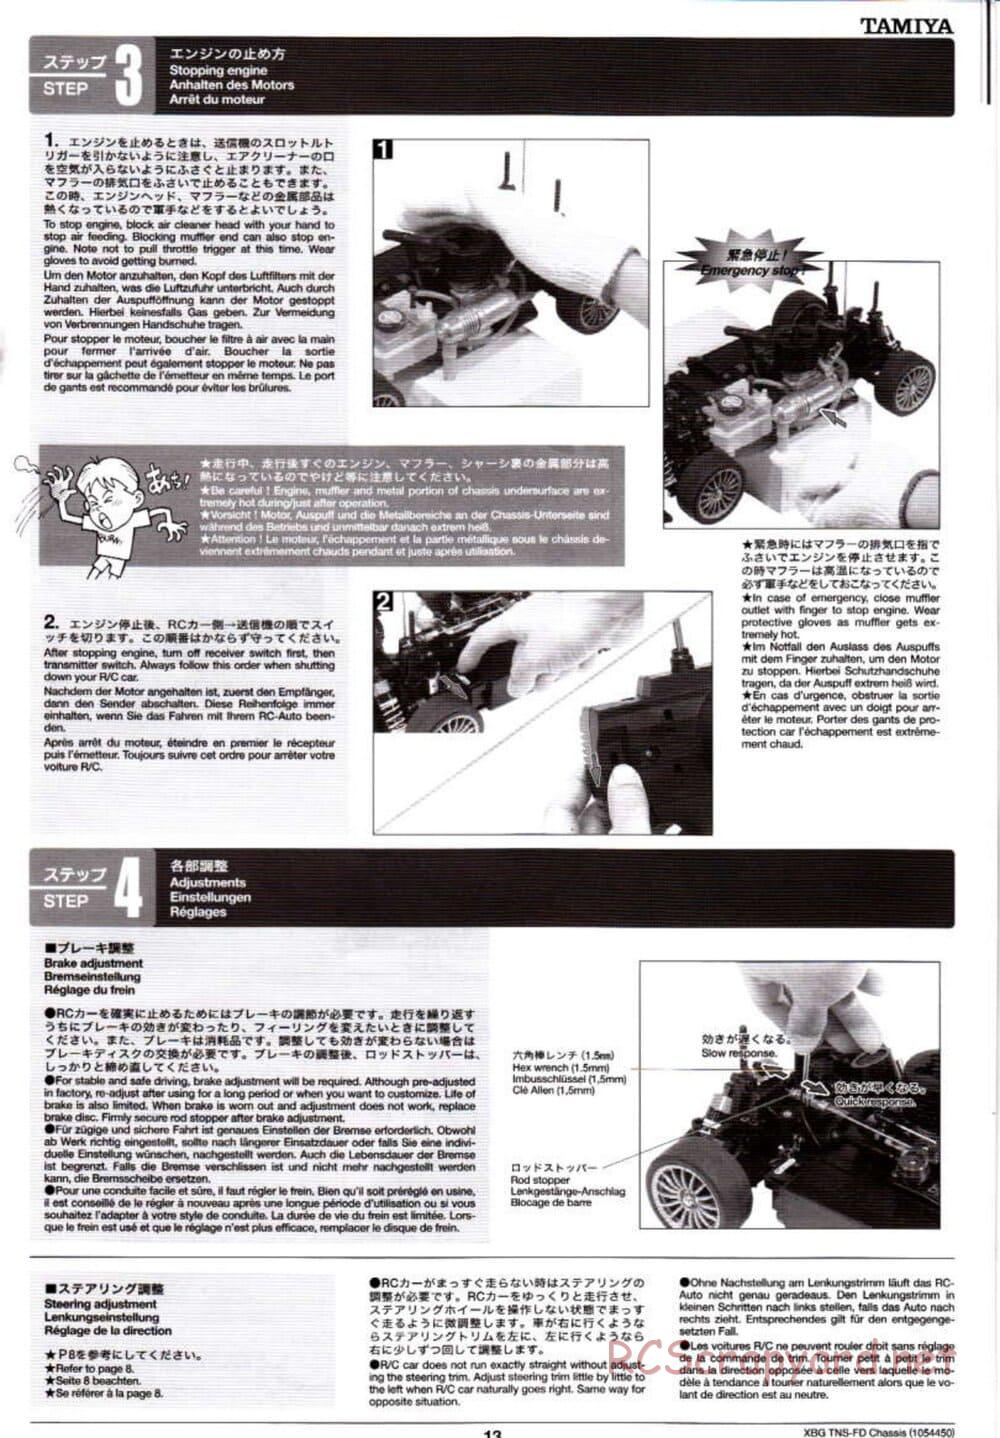 Tamiya - TNS-FD Chassis - Manual - Page 13